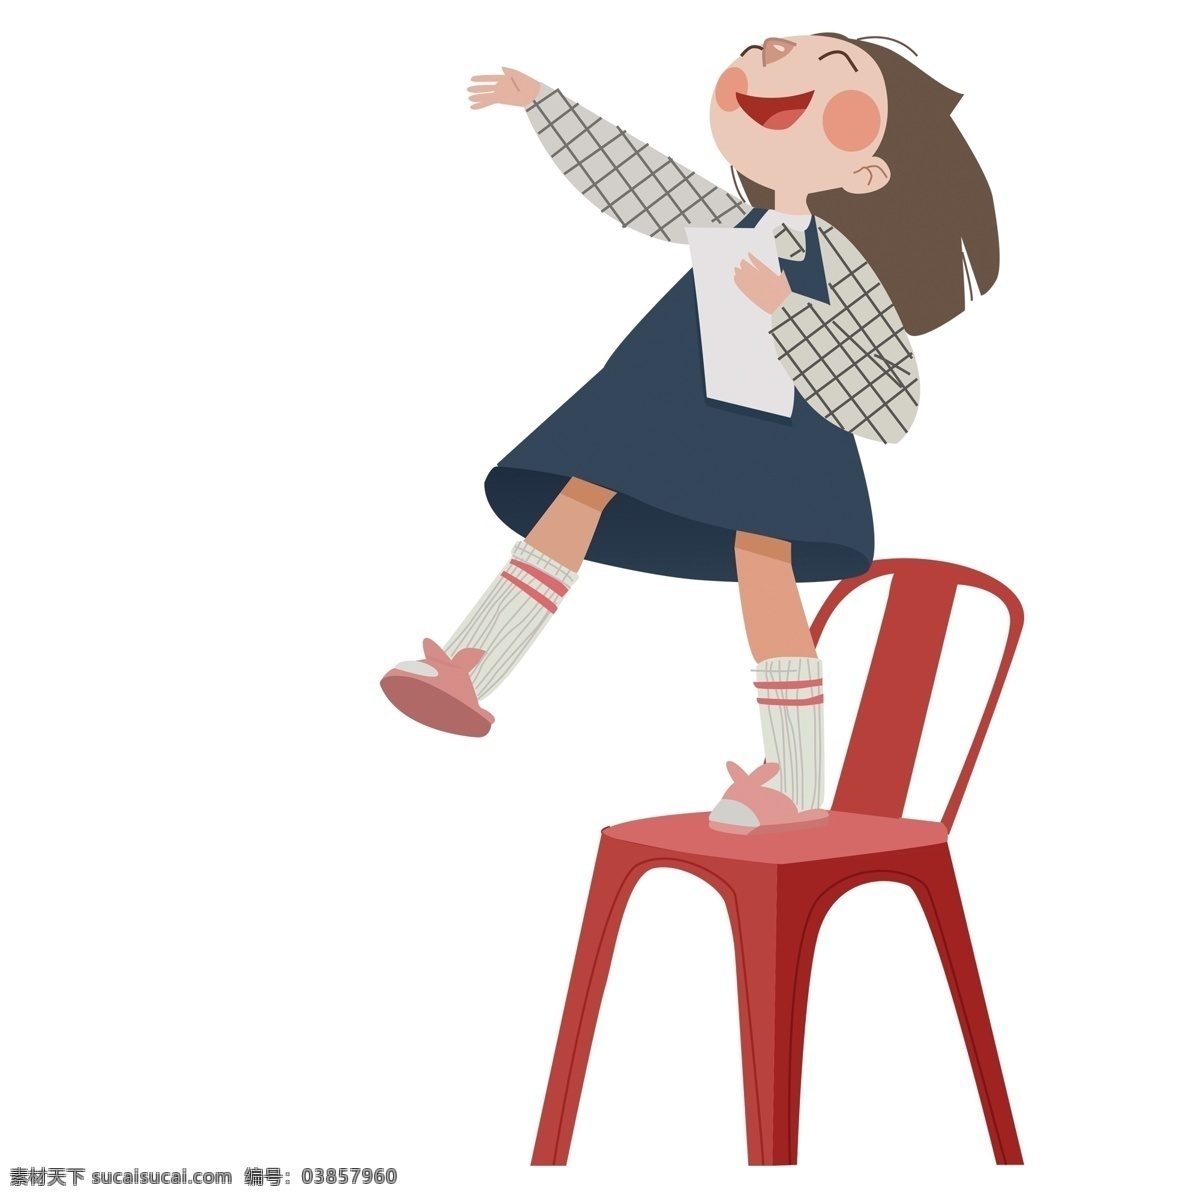 卡通 简约 站 椅子 上 女孩 乐观 人物 插画